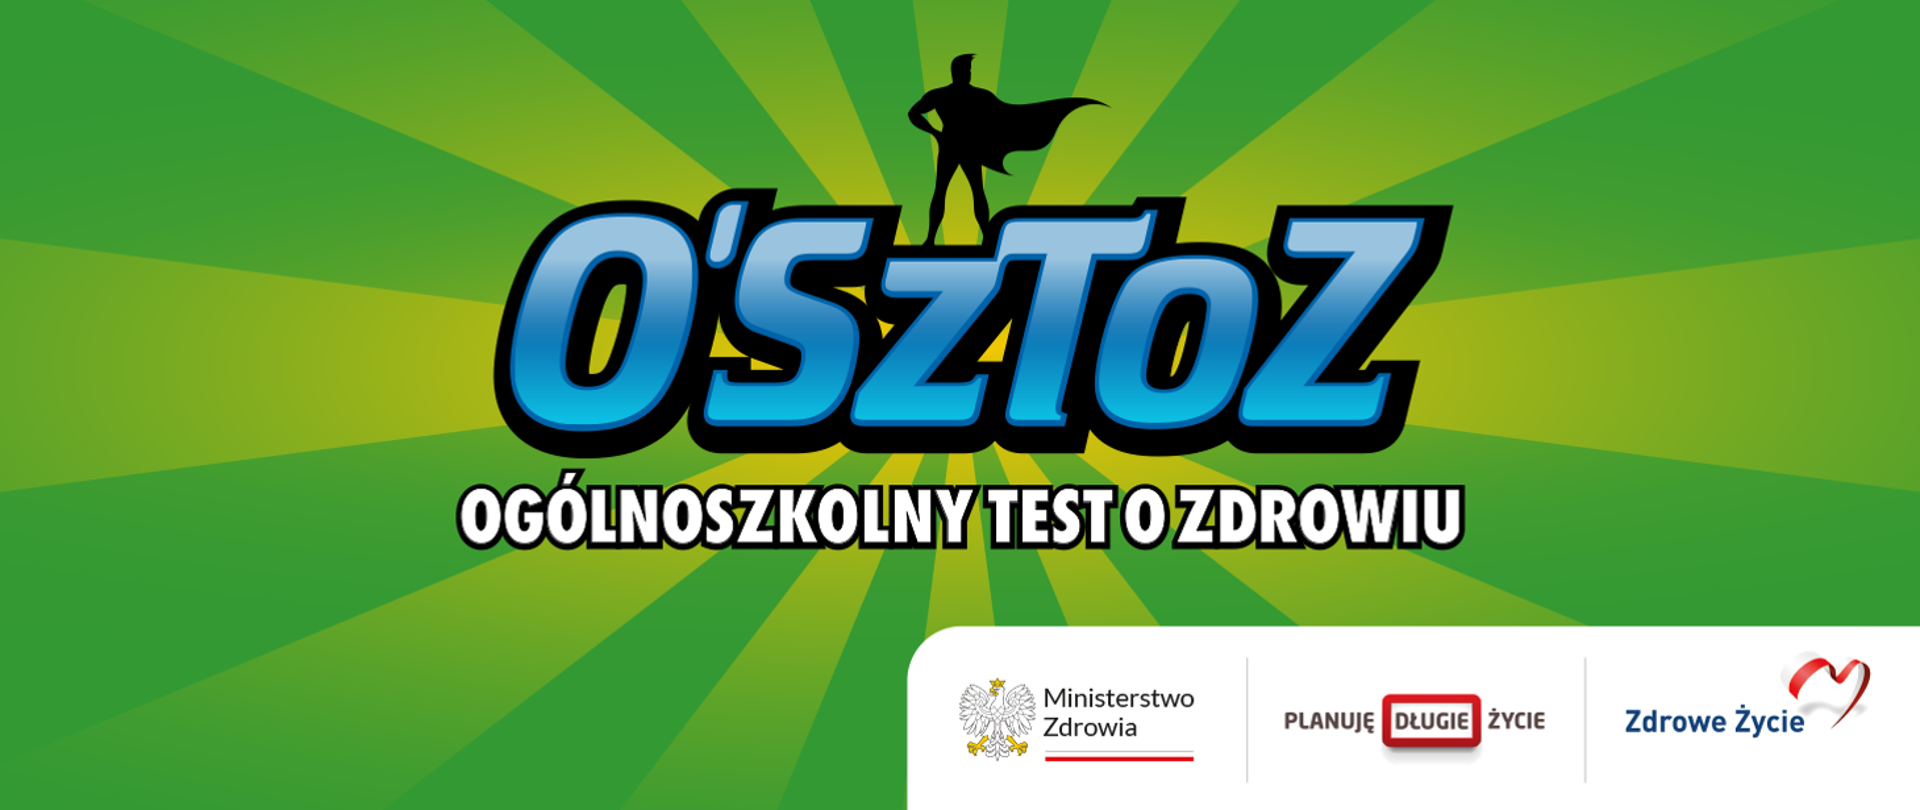 Internetowy konkurs o zdrowiu sprawdzi wiedzę uczniów z całej Polski!